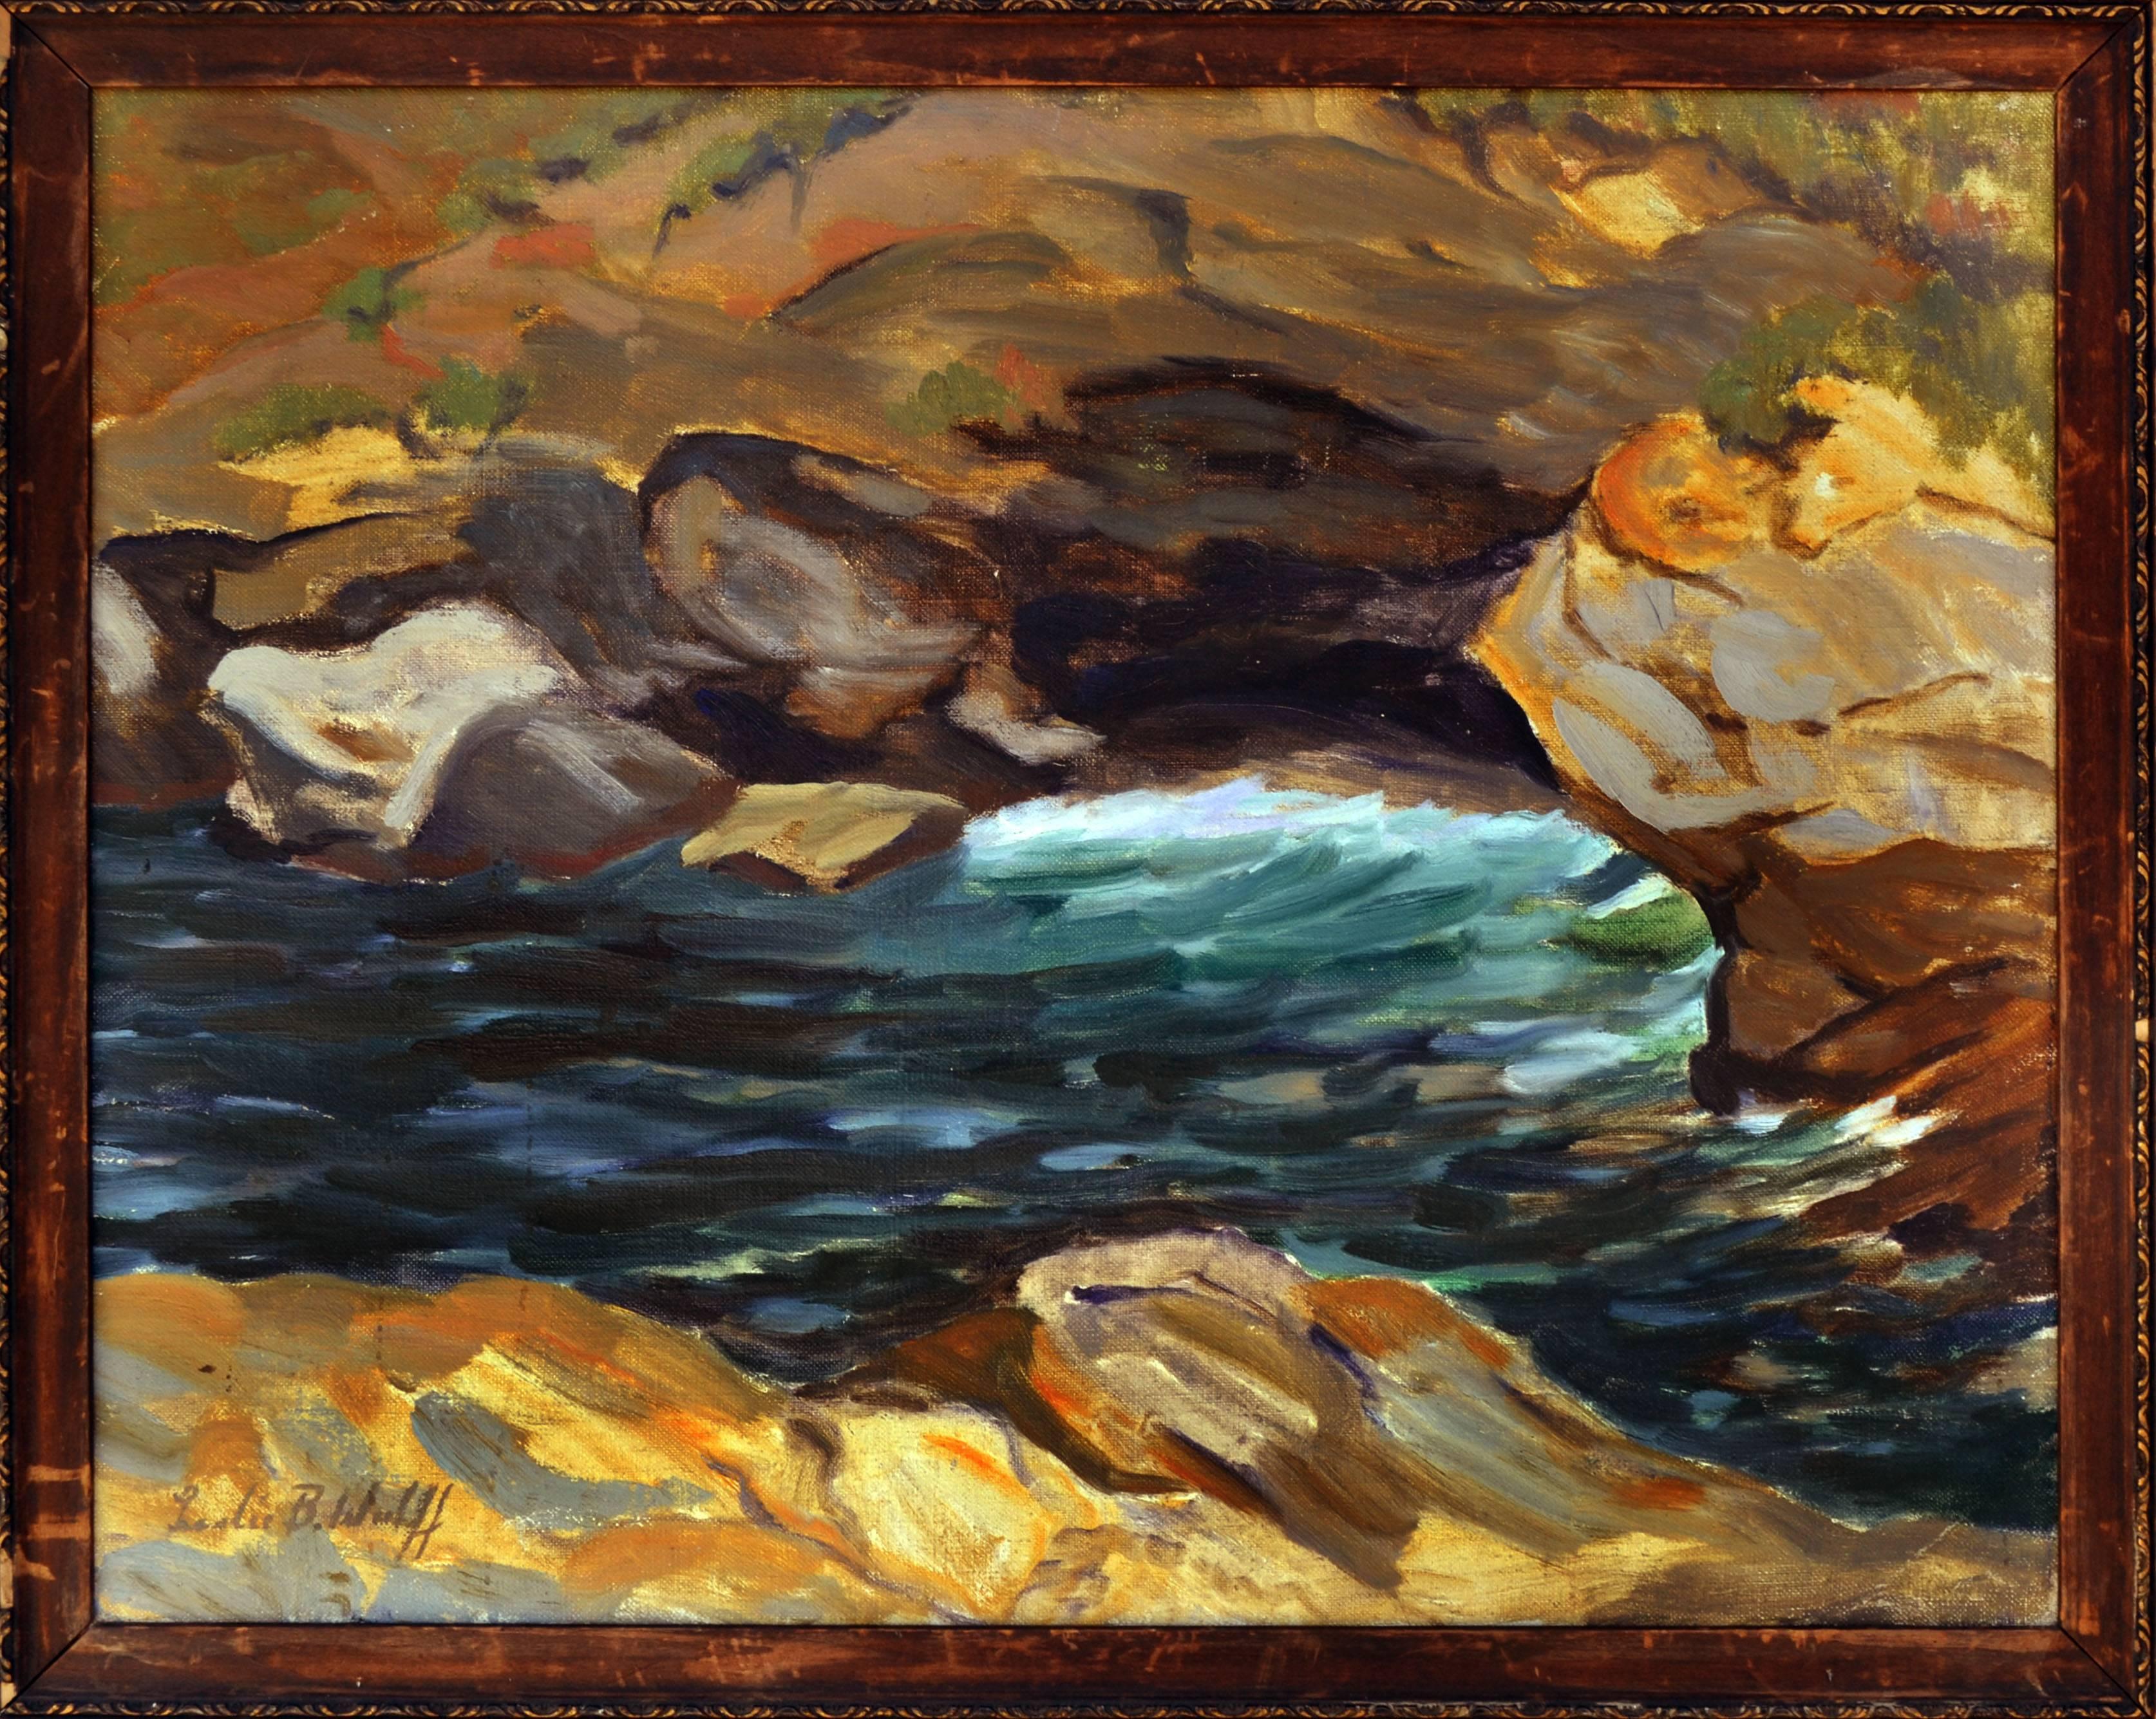 Leslie Bruner Wulff Landscape Painting – The Water on the Rocks - Abstrahierte Landschaft aus den 1930er Jahren